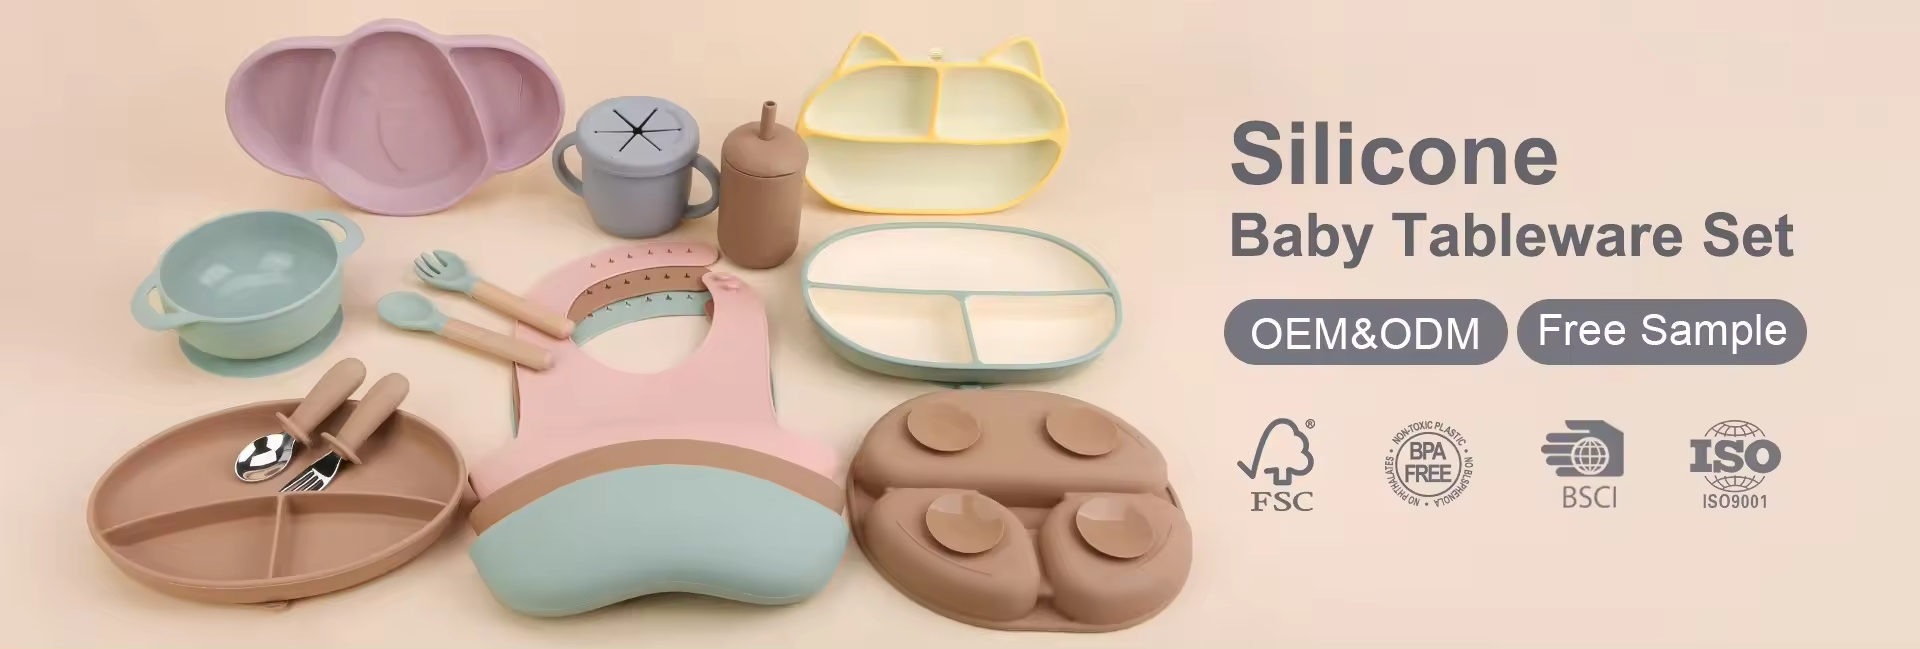 set de silicona para alimentar al bebé